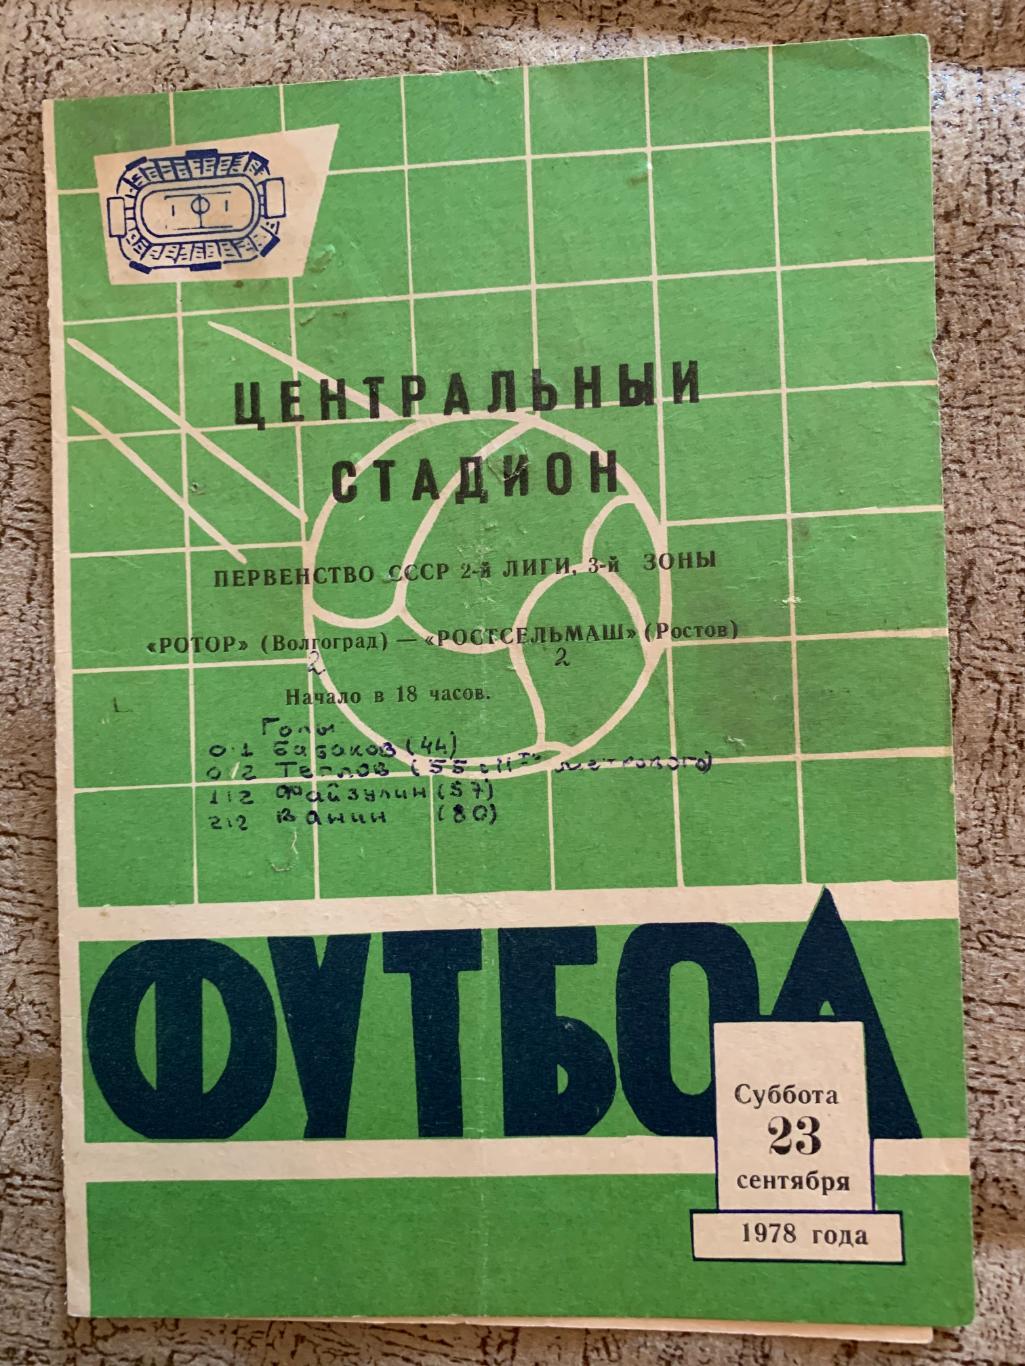 Ротор Волгоград - Ростсельмаш Ростов 23.09.1978